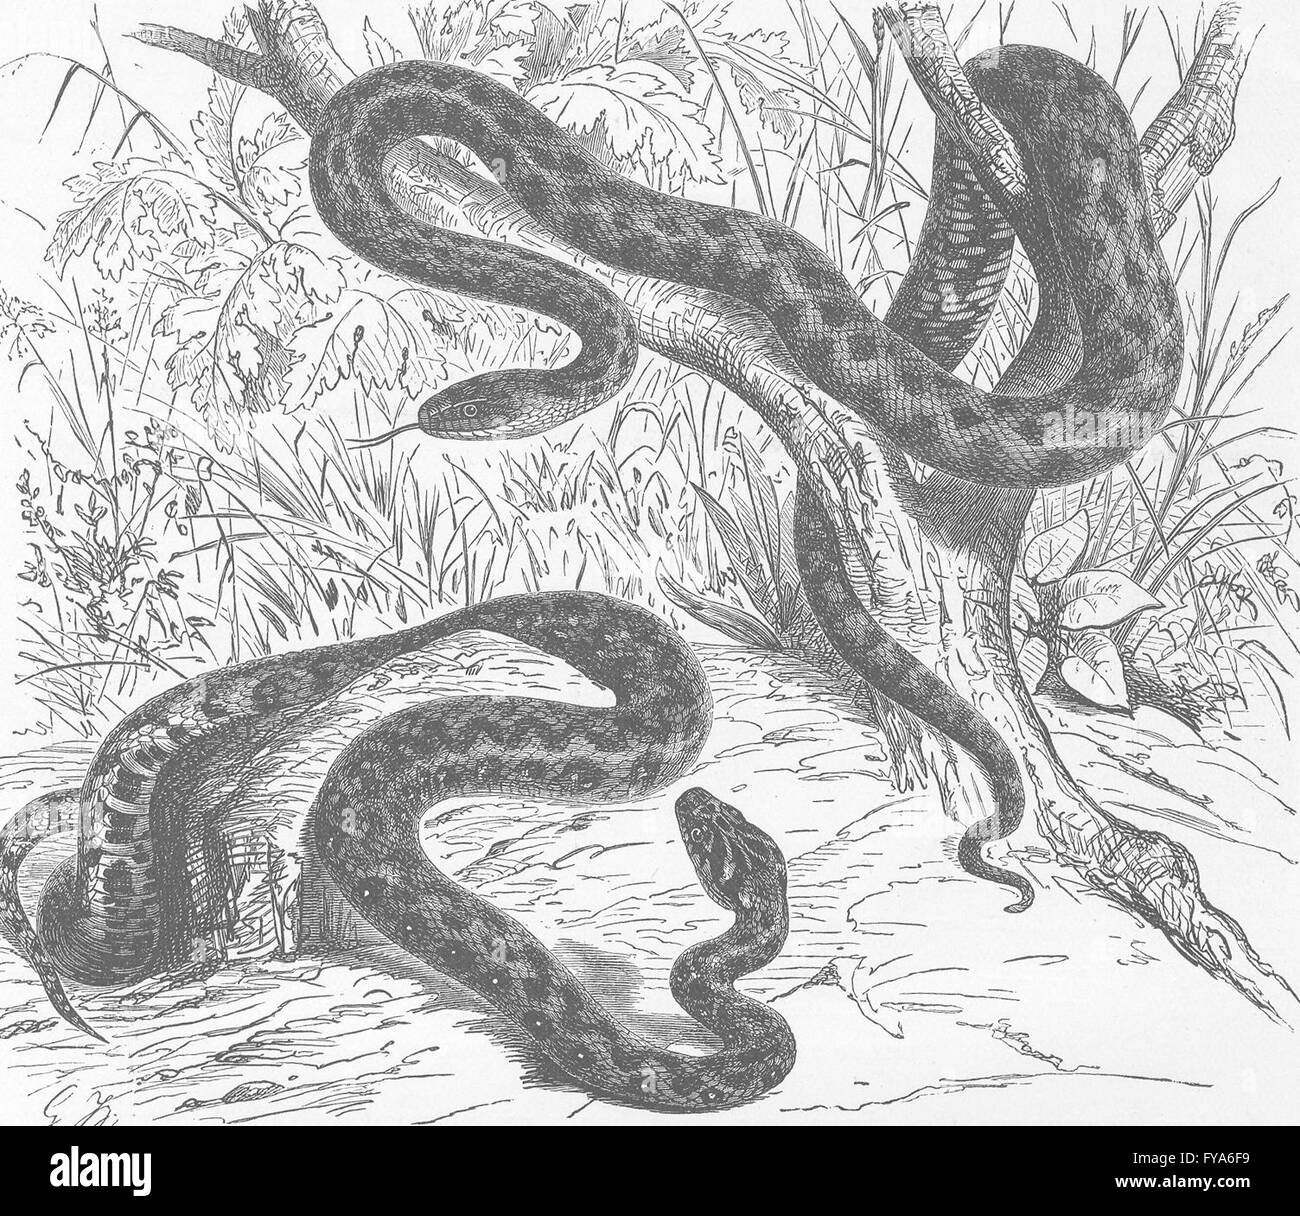 Animales: Viperine & tesselated serpientes , grabado antiguo 1896 Foto de stock